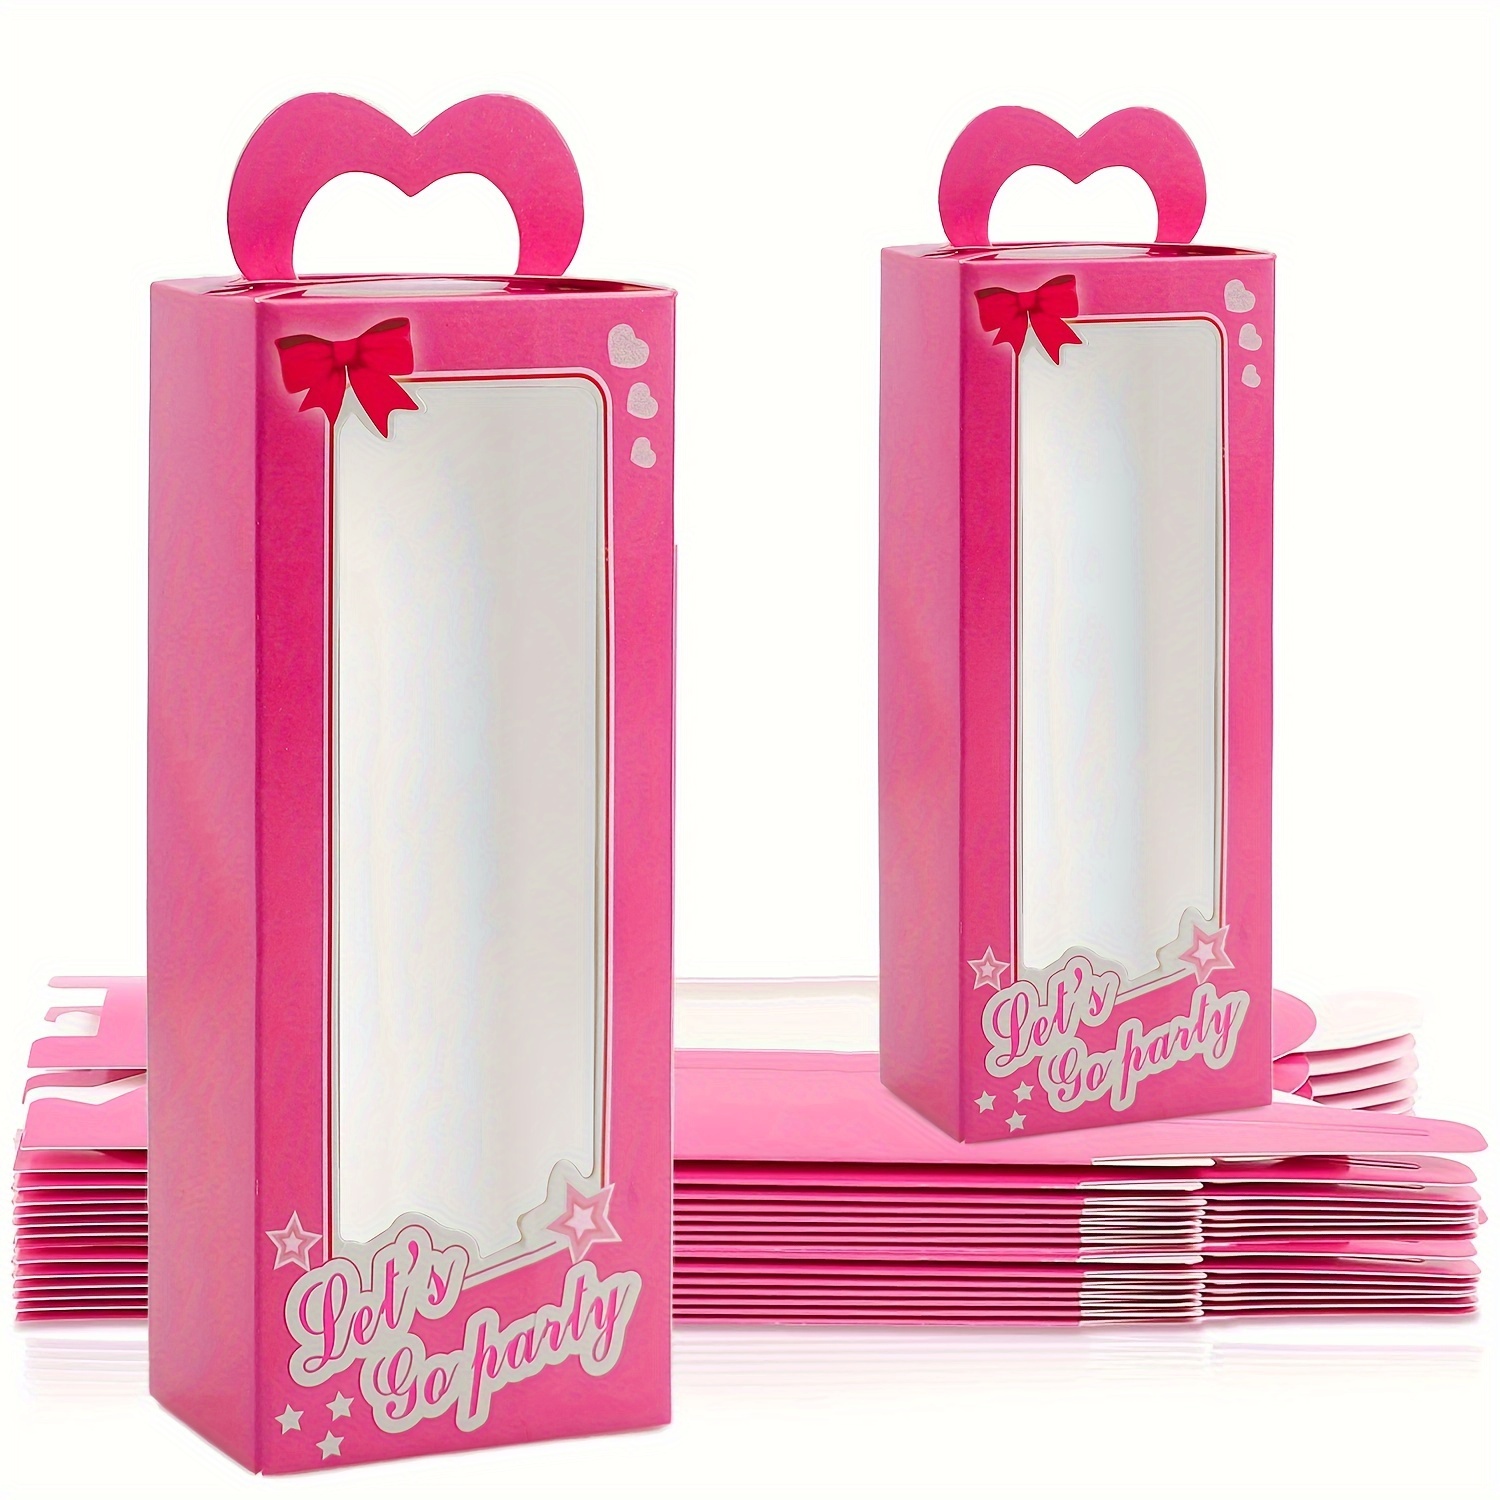 Pegatinas Barbie x 5 - Suministros de Favores para Fiesta de Cumpleaños -  Bolsas